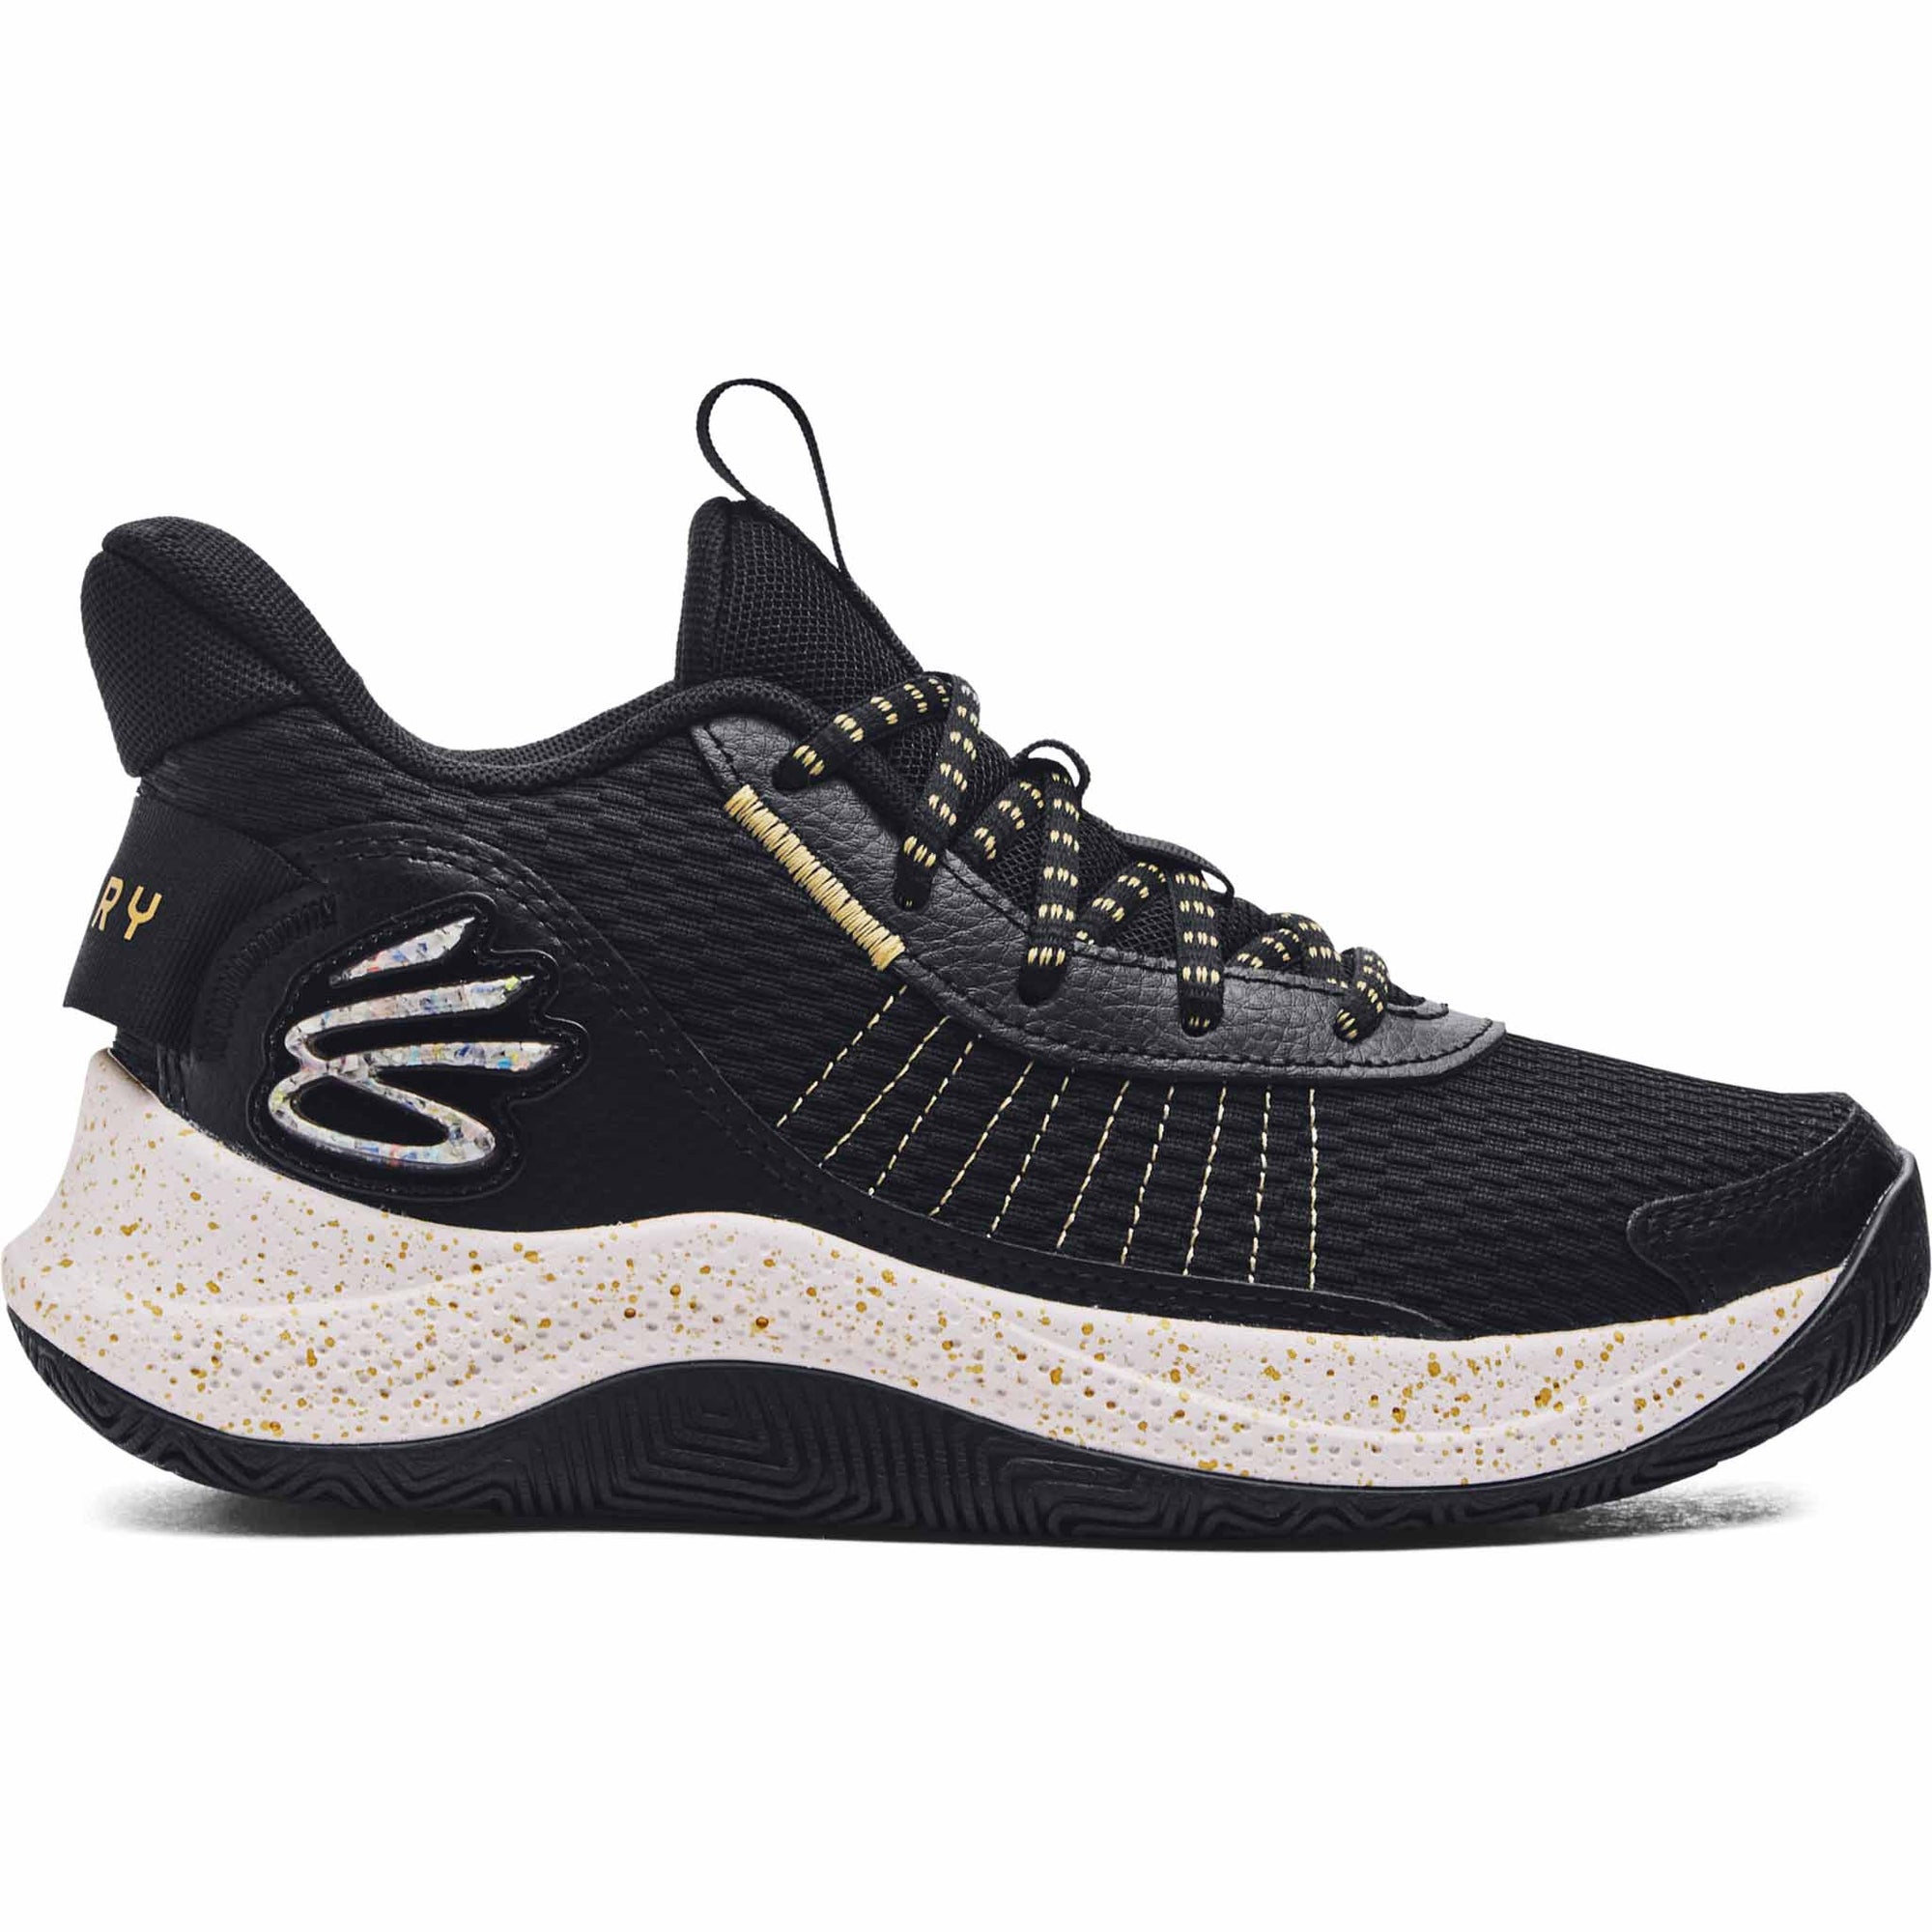 Under Armour Curry 3Z7 chaussures de basketball pour enfant - Black / Metallic Gold